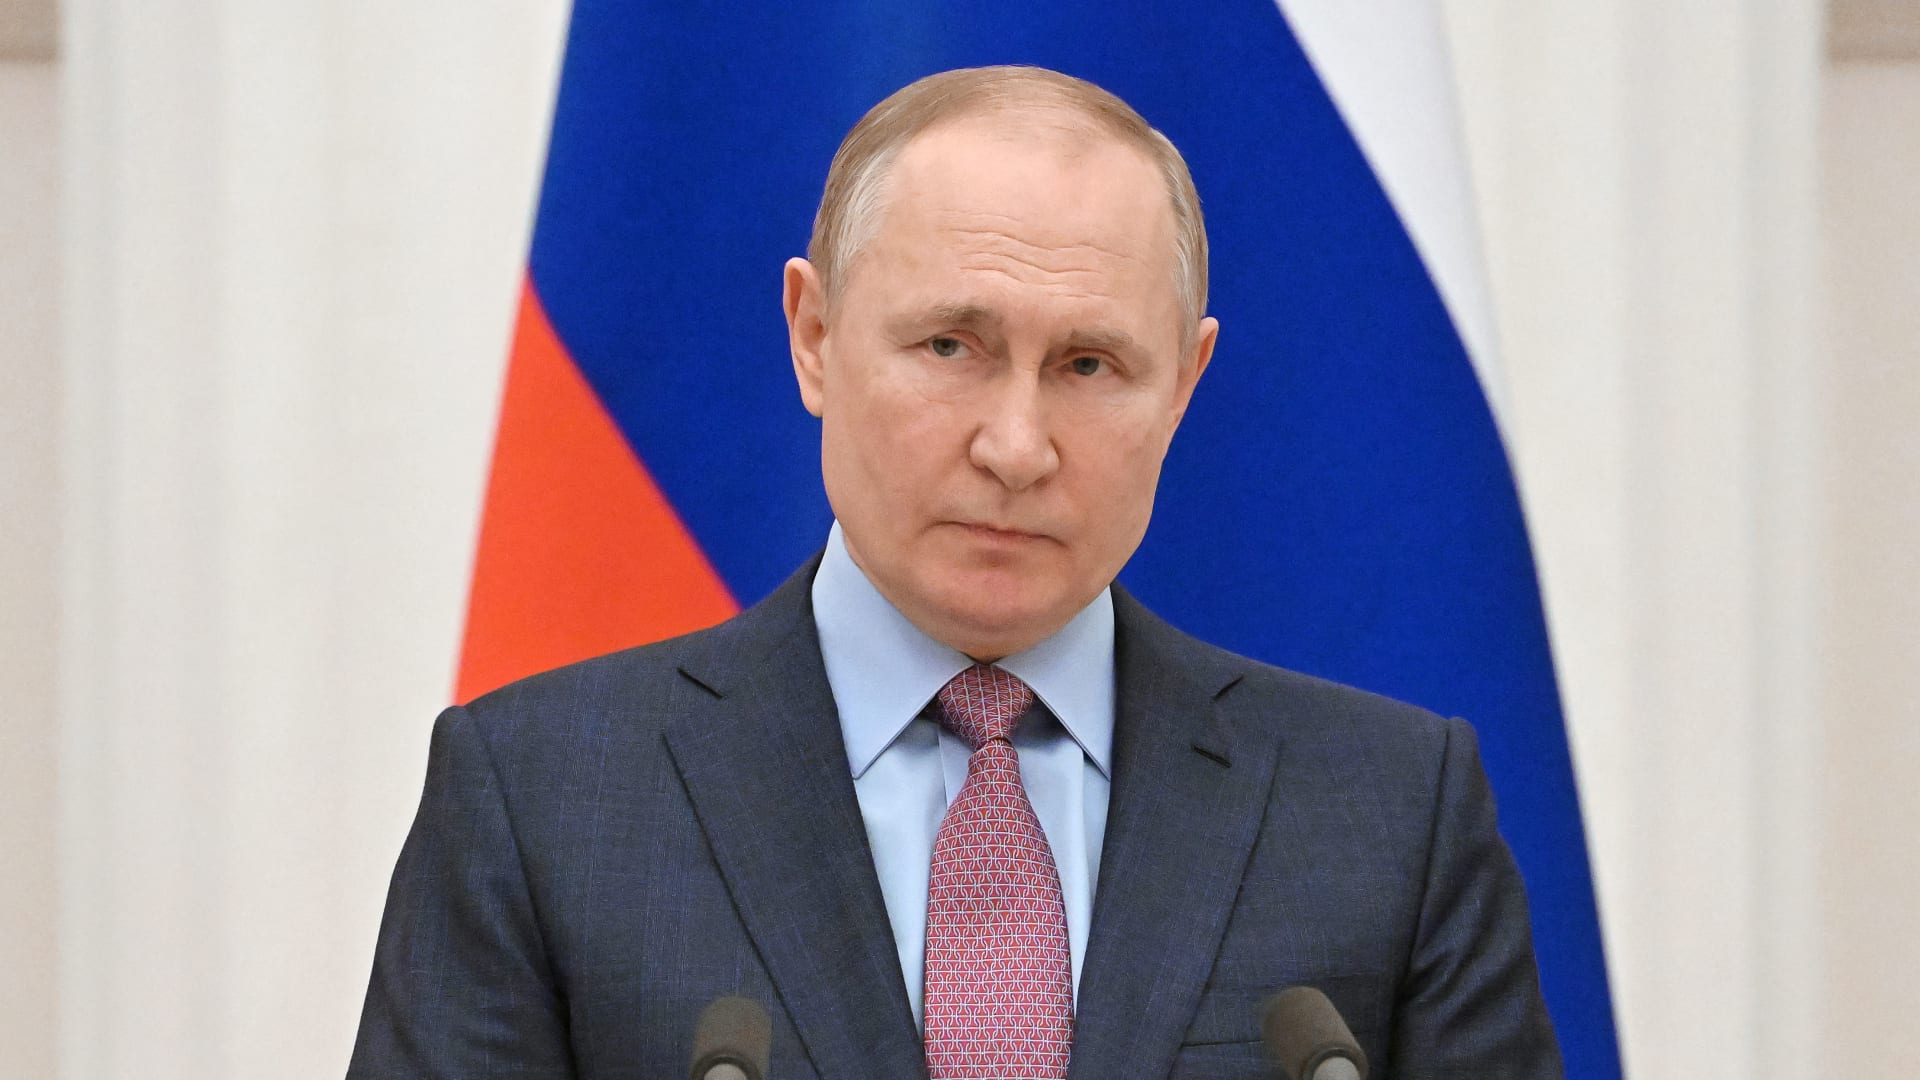 بوتين يوجه تحذيرًا شديد اللهجة: "كل الوسائل المتاحة لنا" للدفاع عن "روسيا وشعبنا"